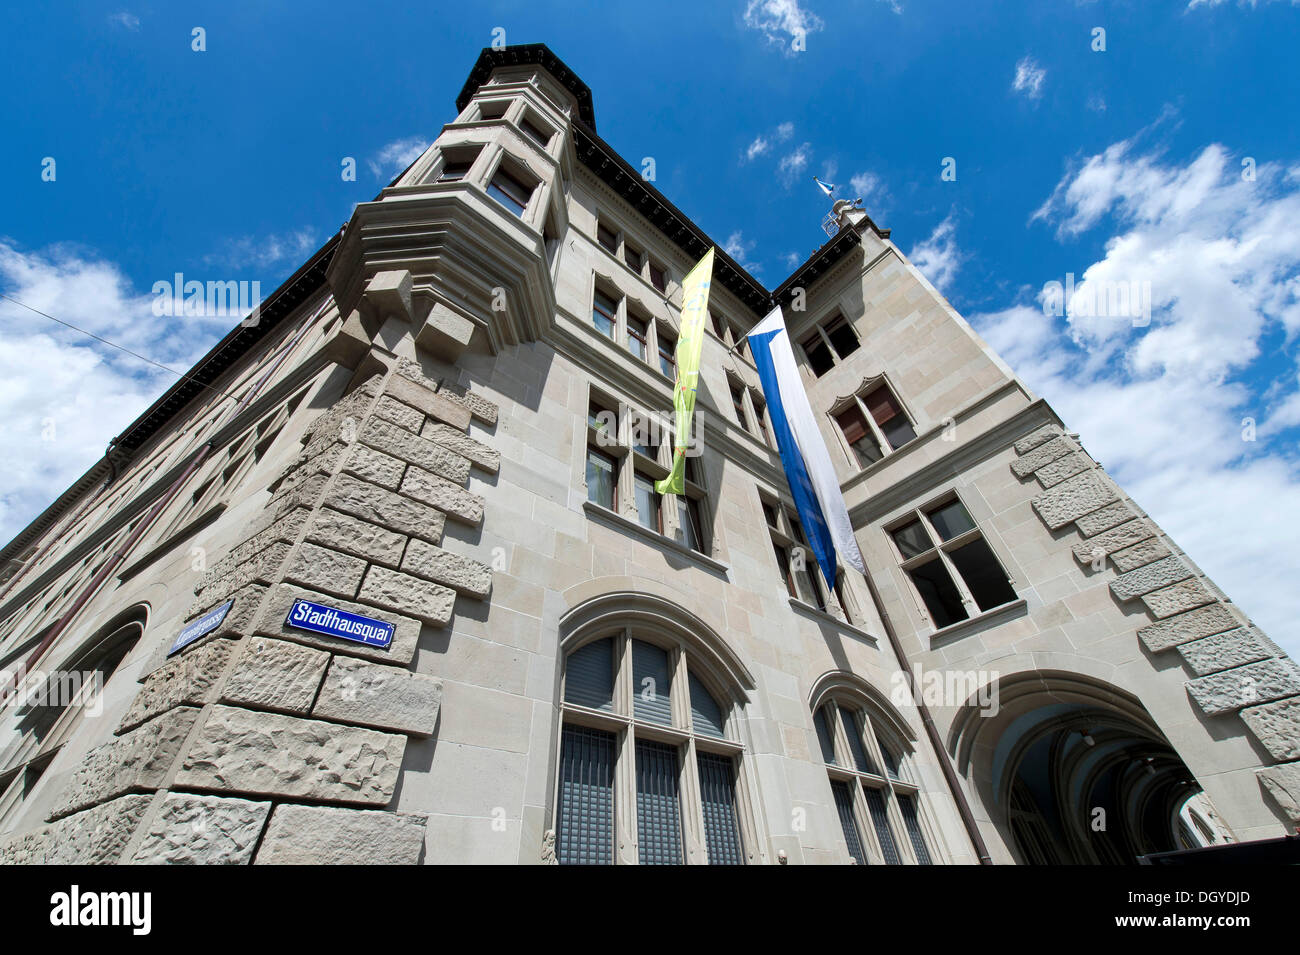 Stadthaus building, Zurich, Switzerland, Europe Stock Photo